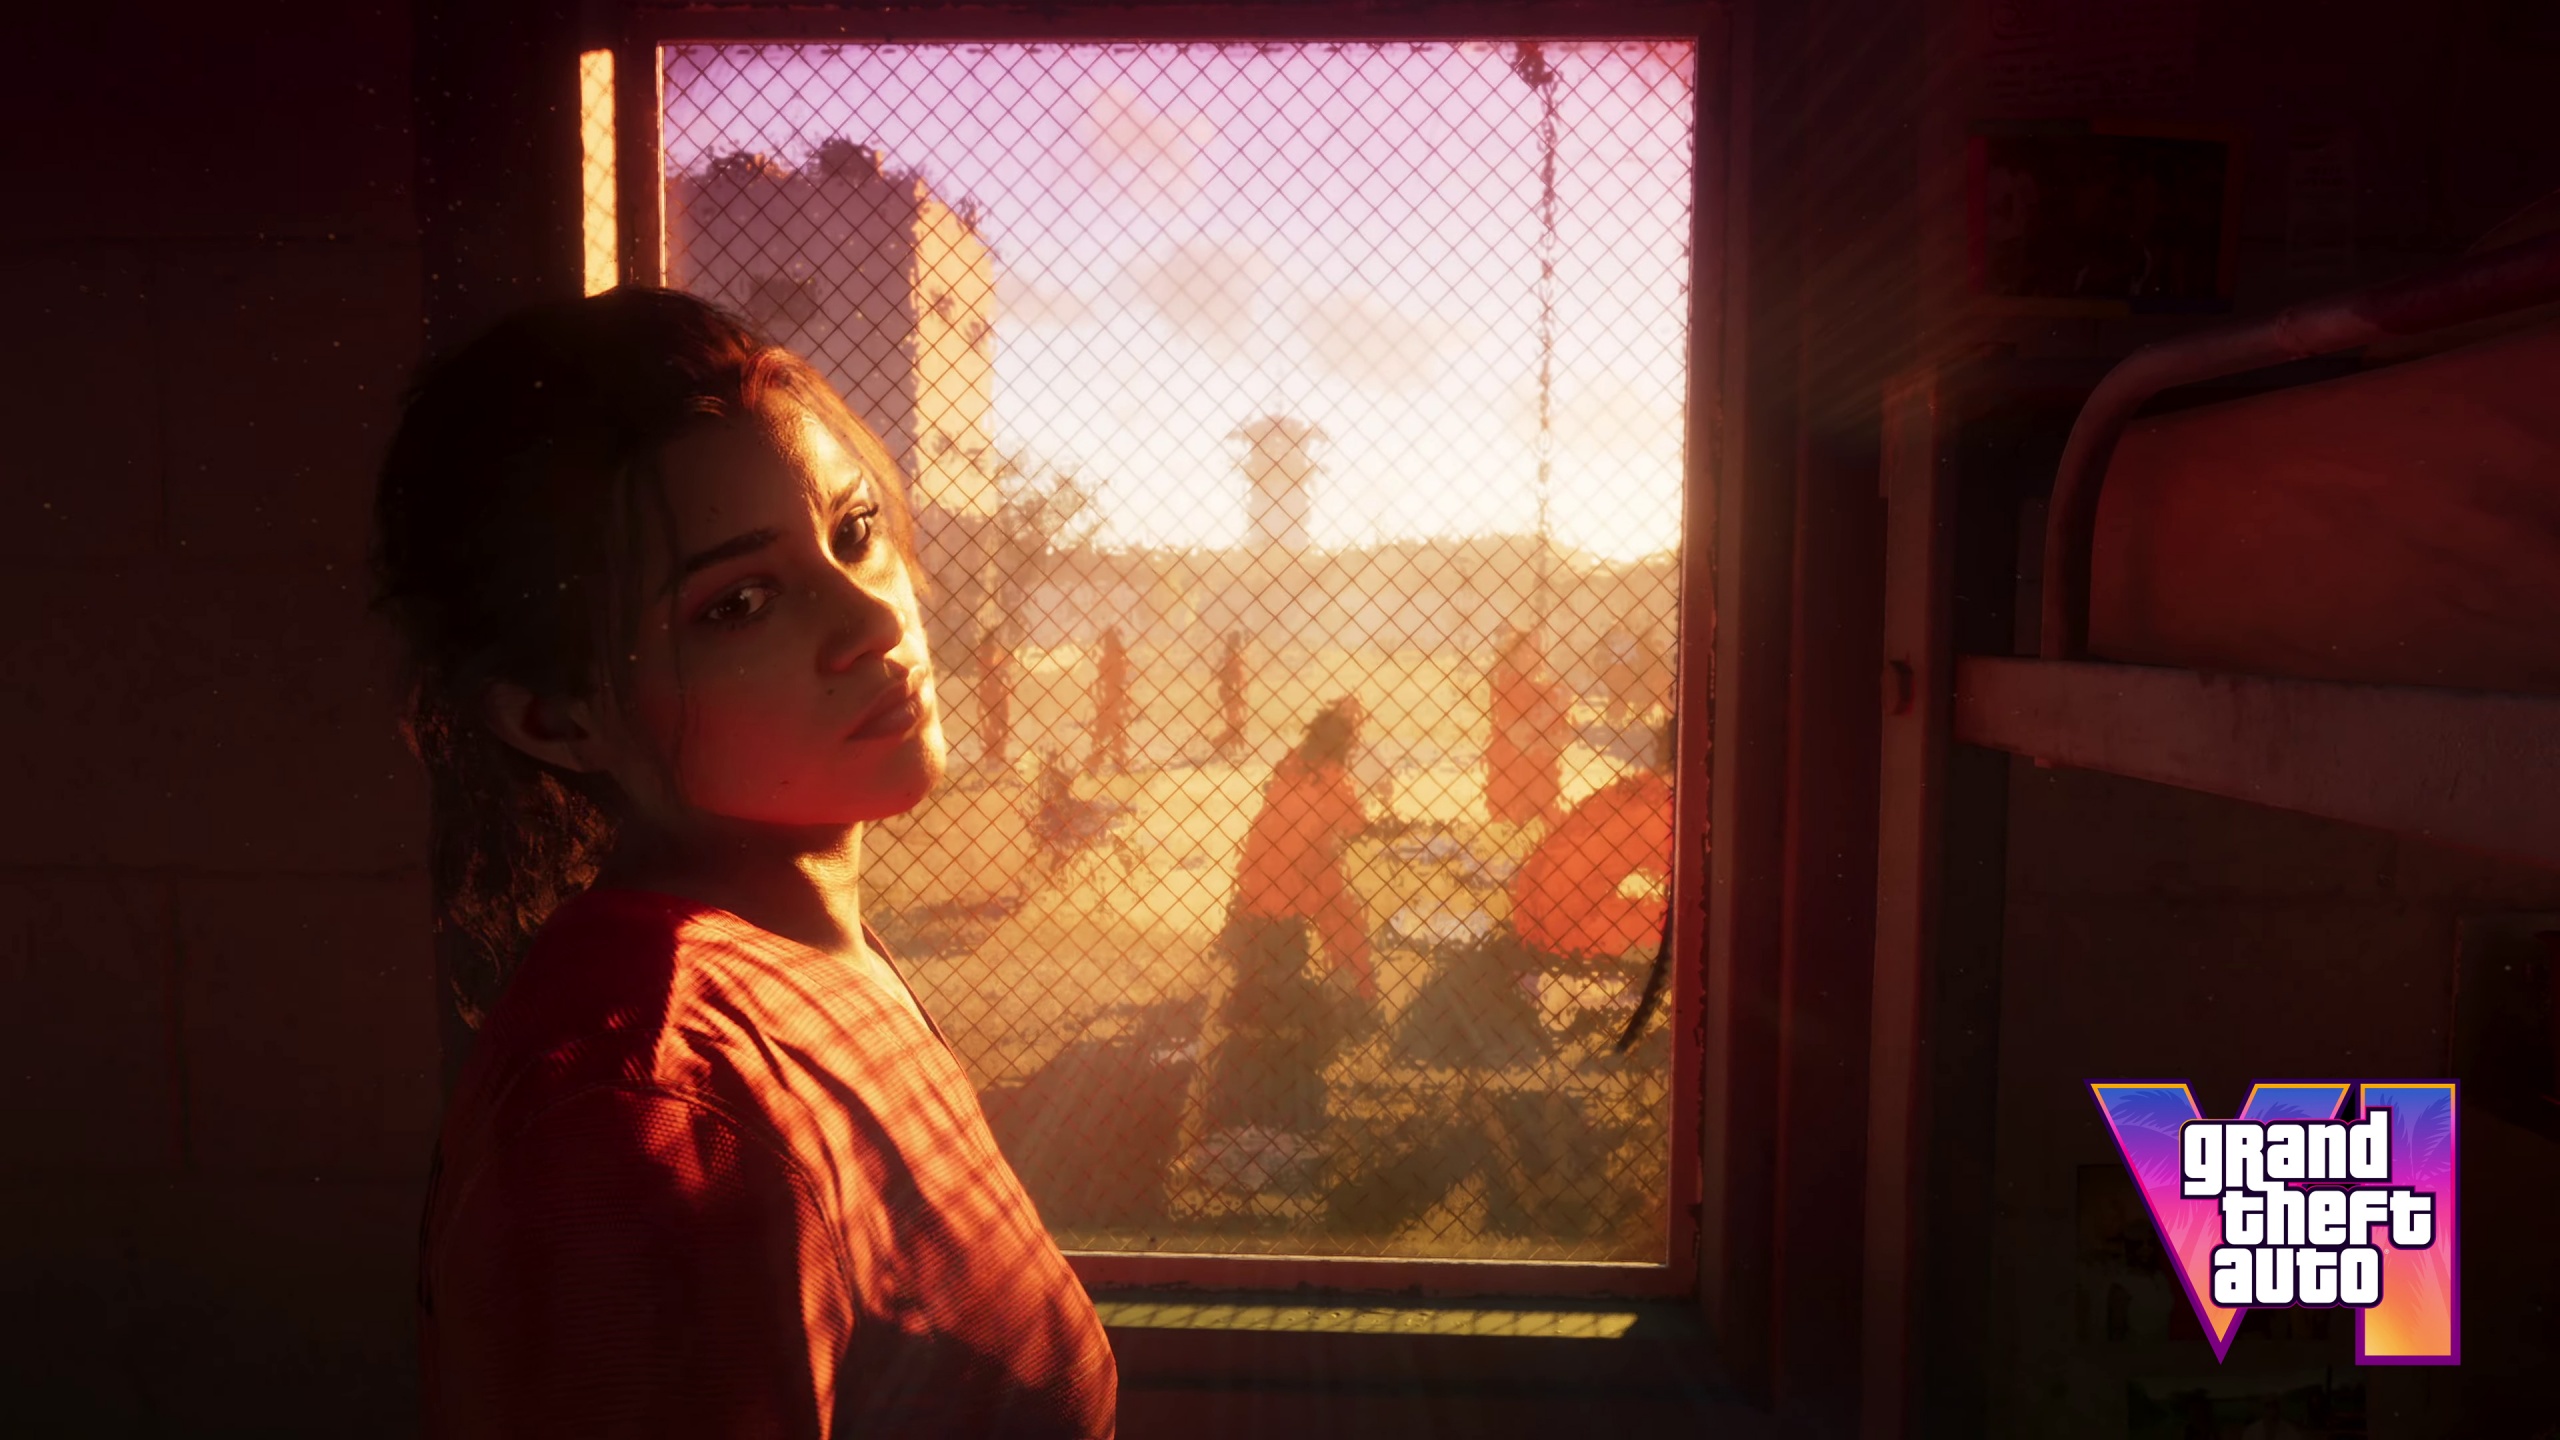 GTA 6: Rockstar Releases New 'Grand Theft Auto VI' Trailer, 40% OFF